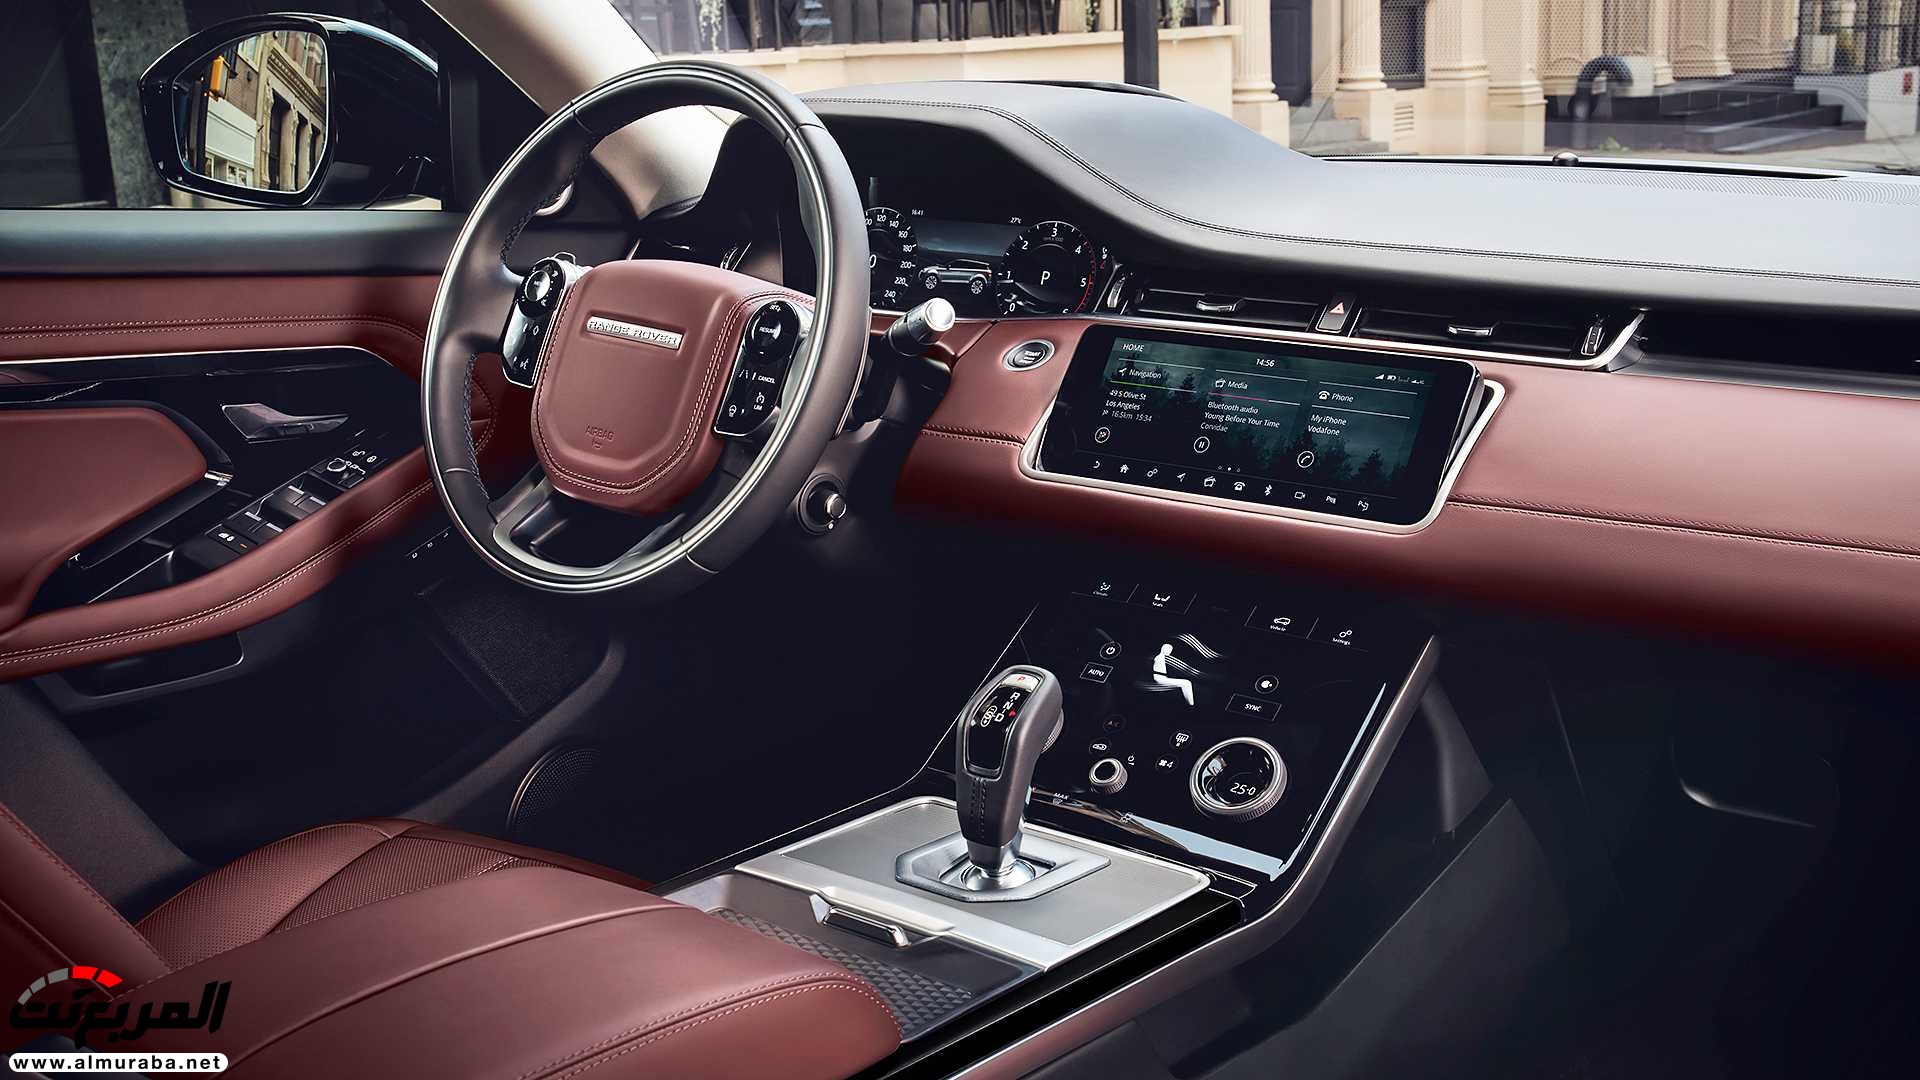 اهم 7 معلومات عن رنج روفر ايفوك 2020 الجديدة كلياً Range Rover Evoque 53